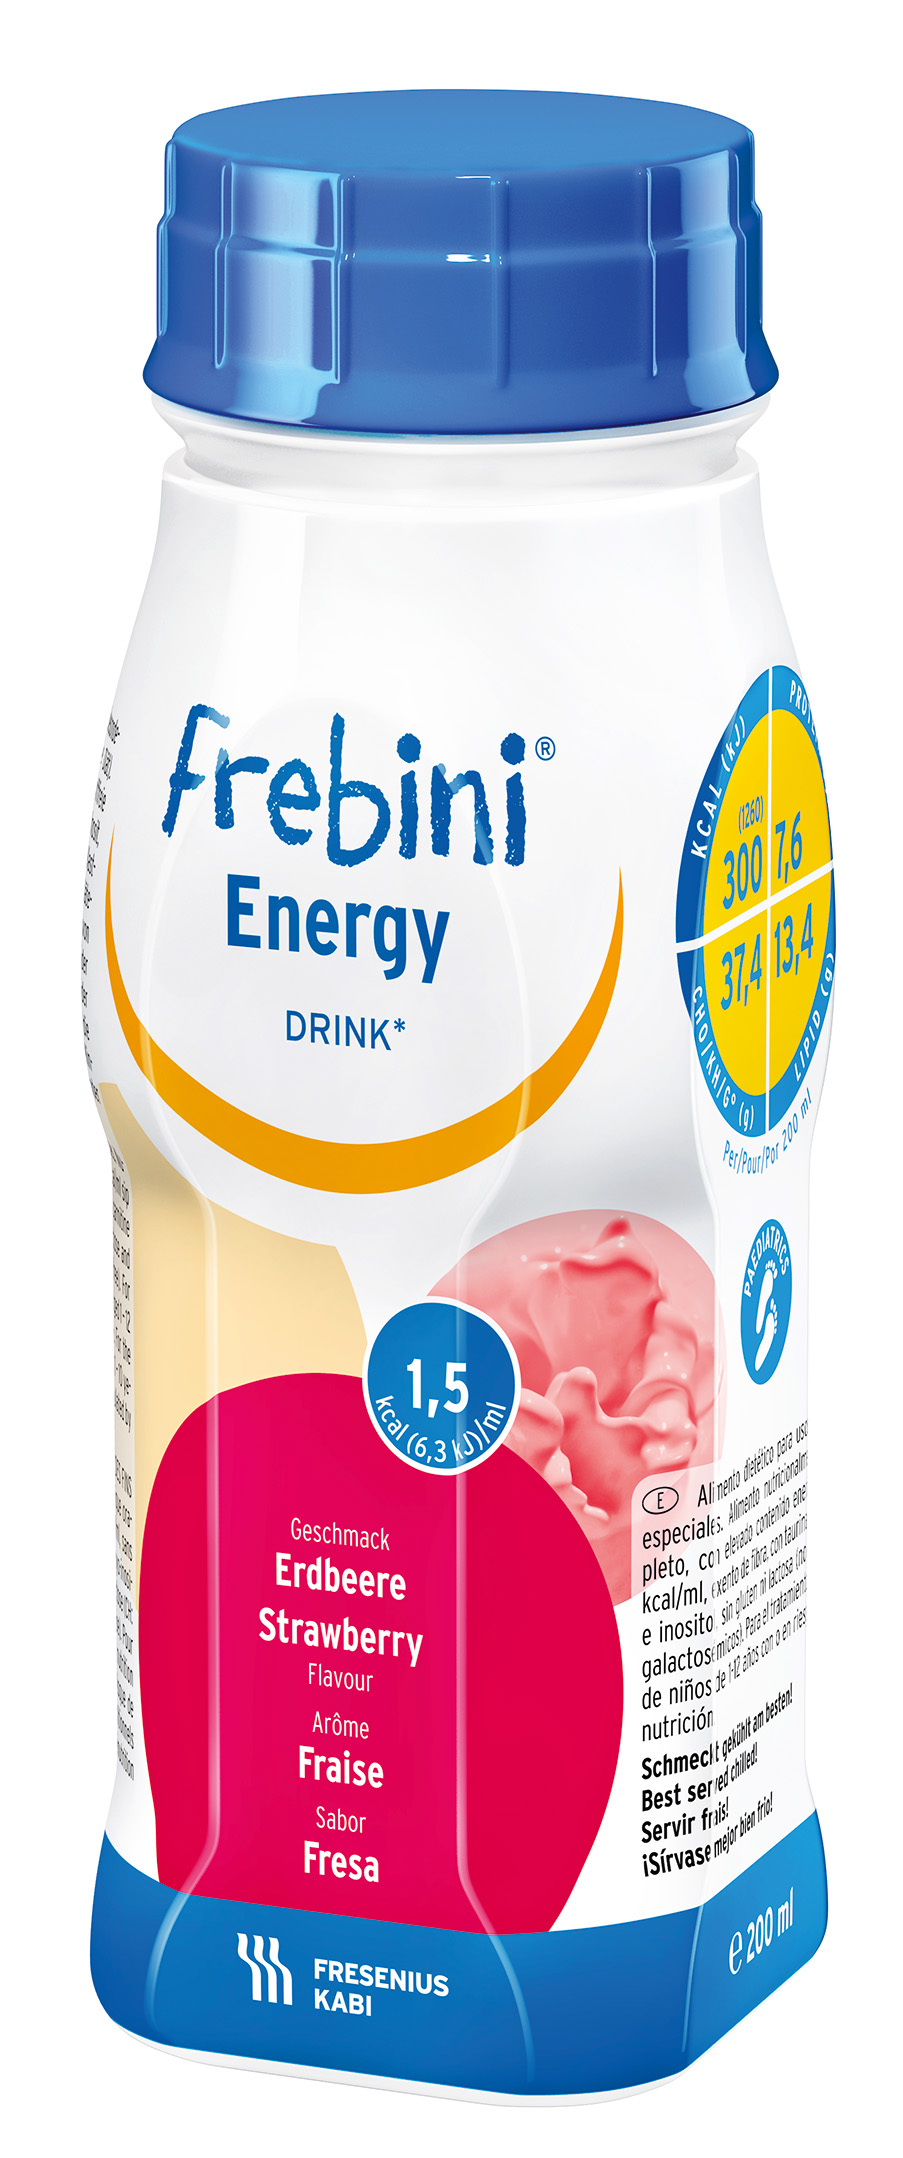 Frebini Energy Drink , Næringsdrikk  jordbær, 4x200 ml